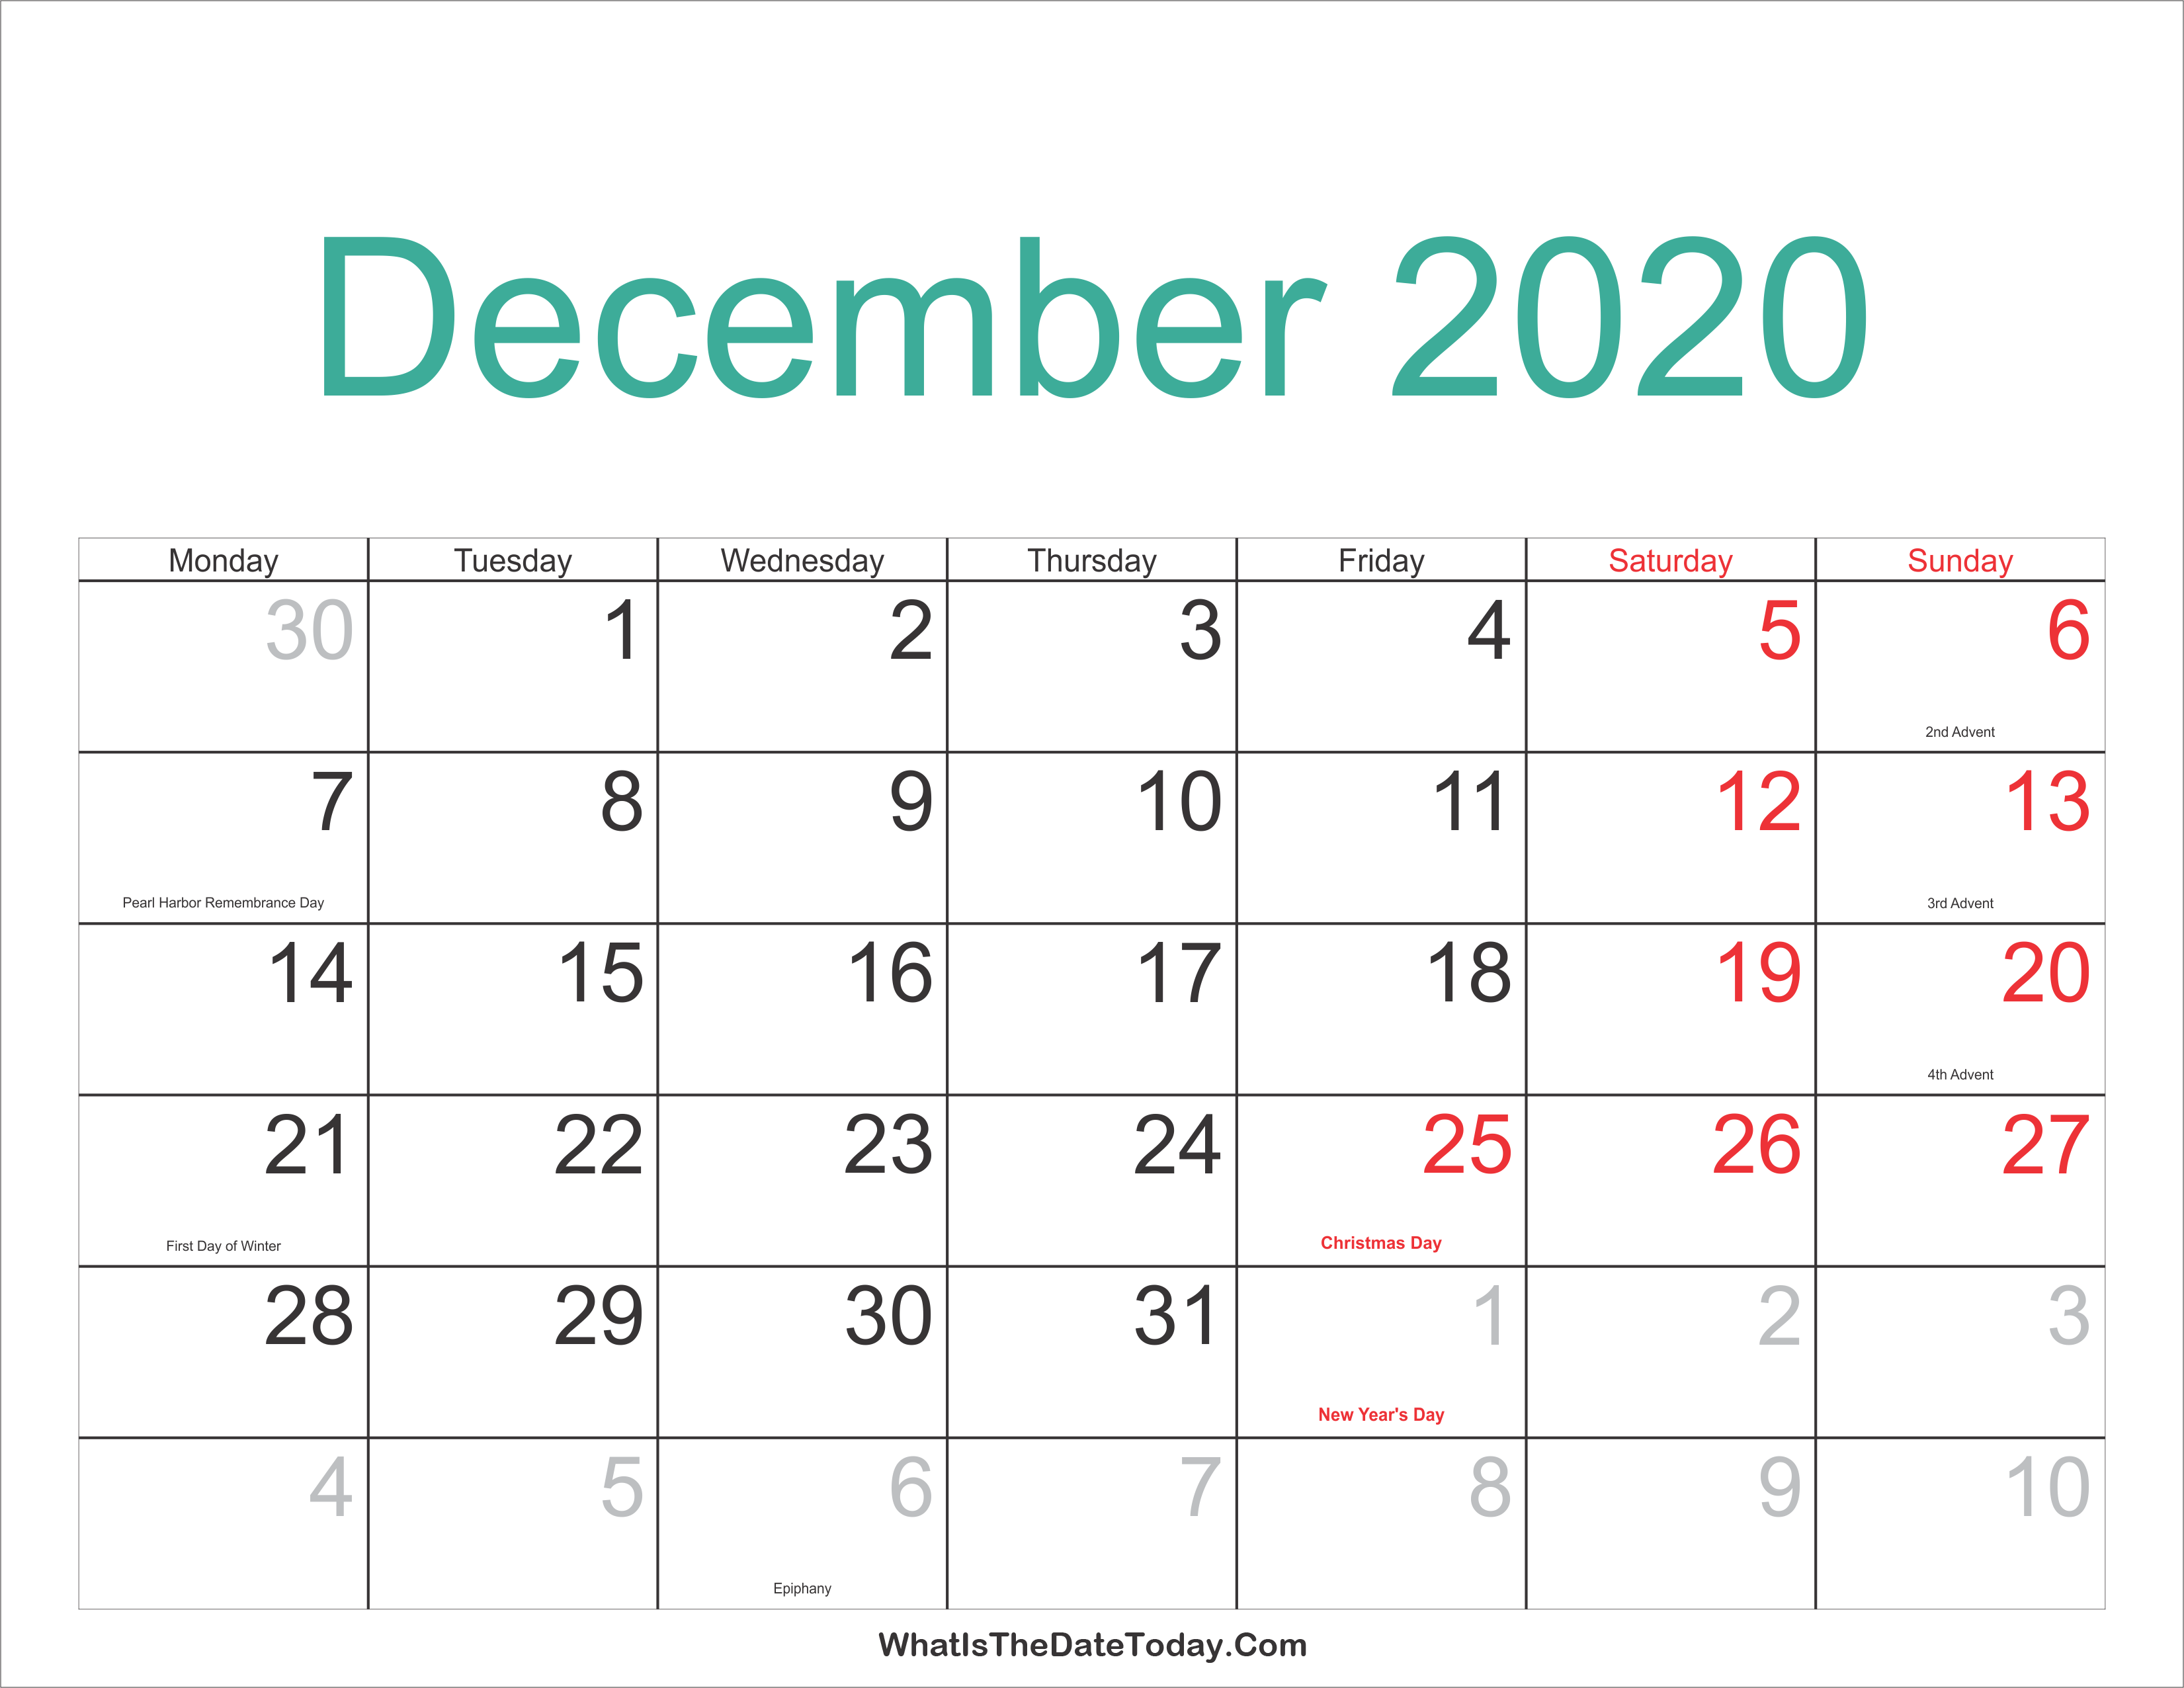 christmas 2020 calendar December 2020 Calendar Printable With Holidays Whatisthedatetoday Com christmas 2020 calendar